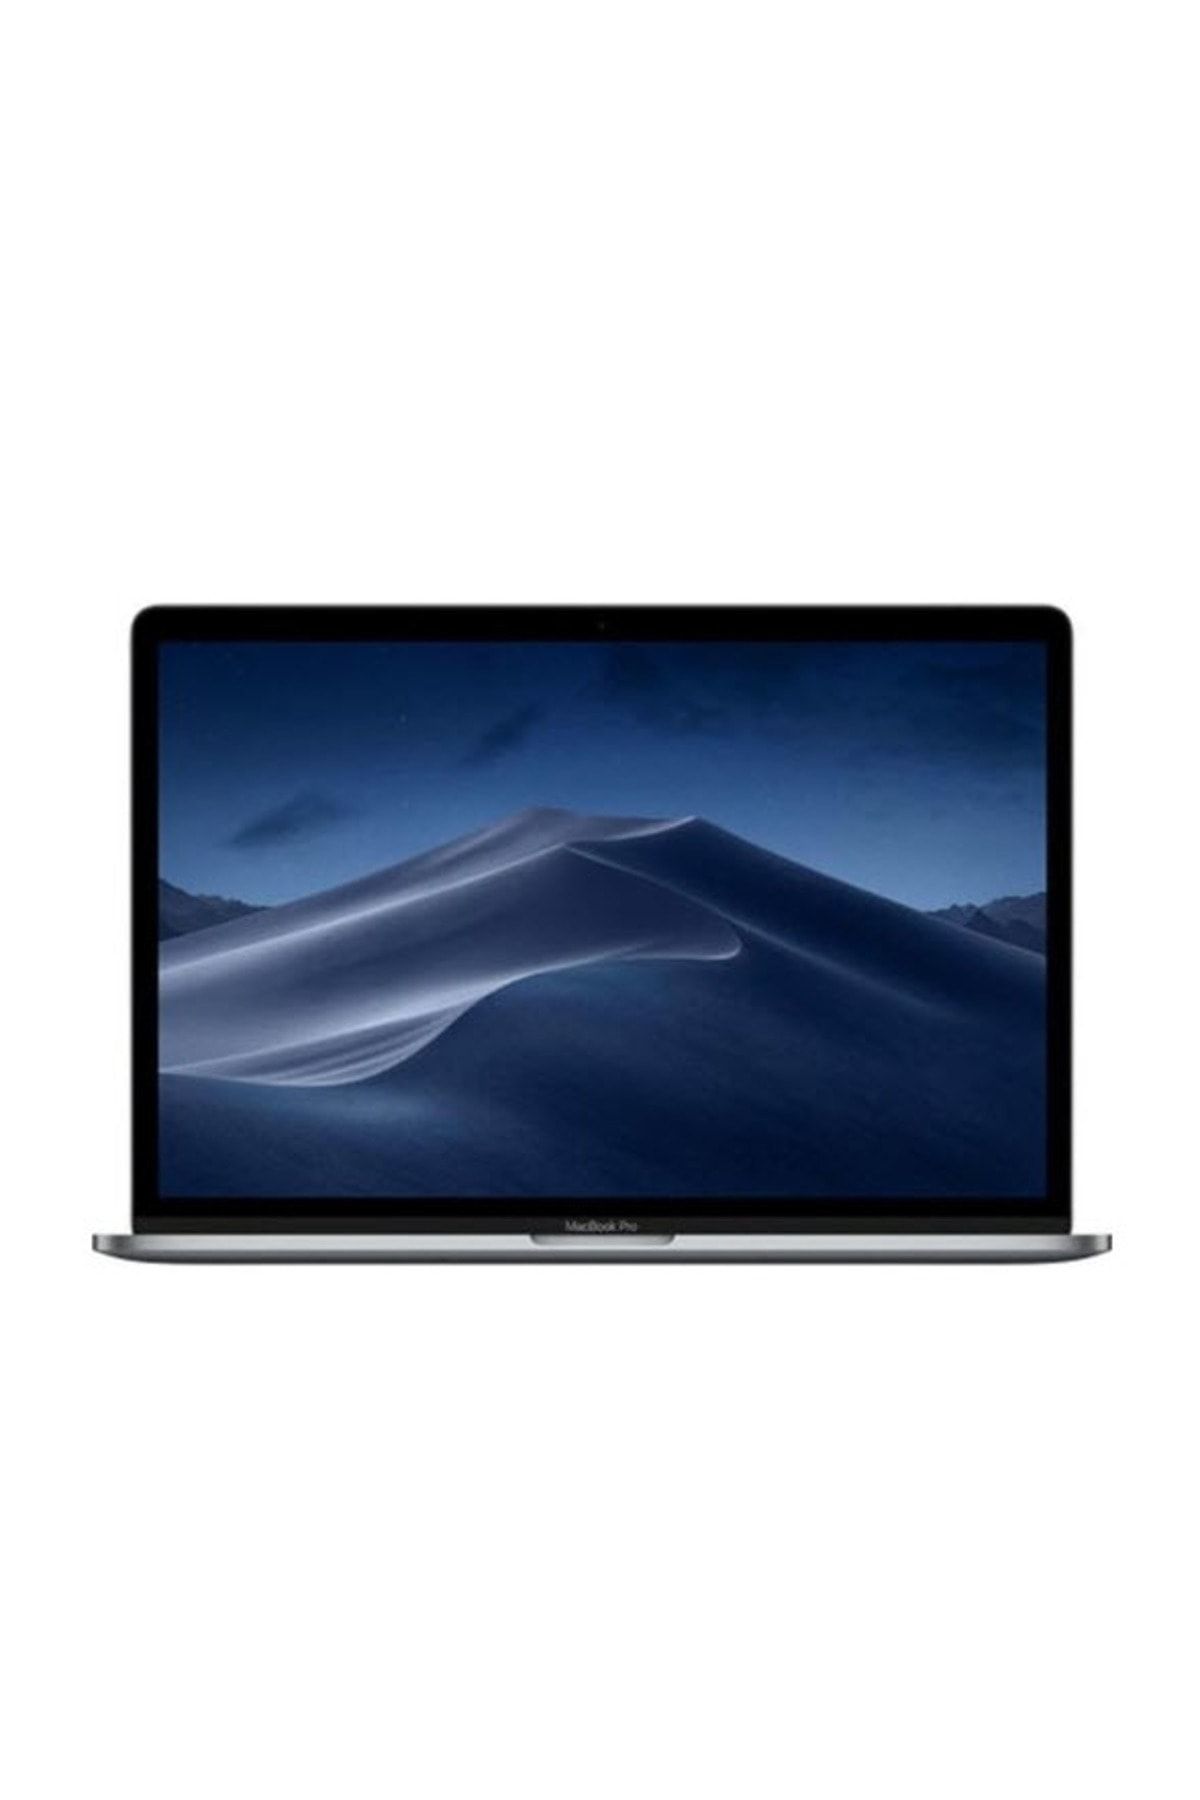 Apple MacBook Pro Touchbar Intel Core i5 8250U 8GB 128GB SSD 13.3" macOS MUHN2TU/A